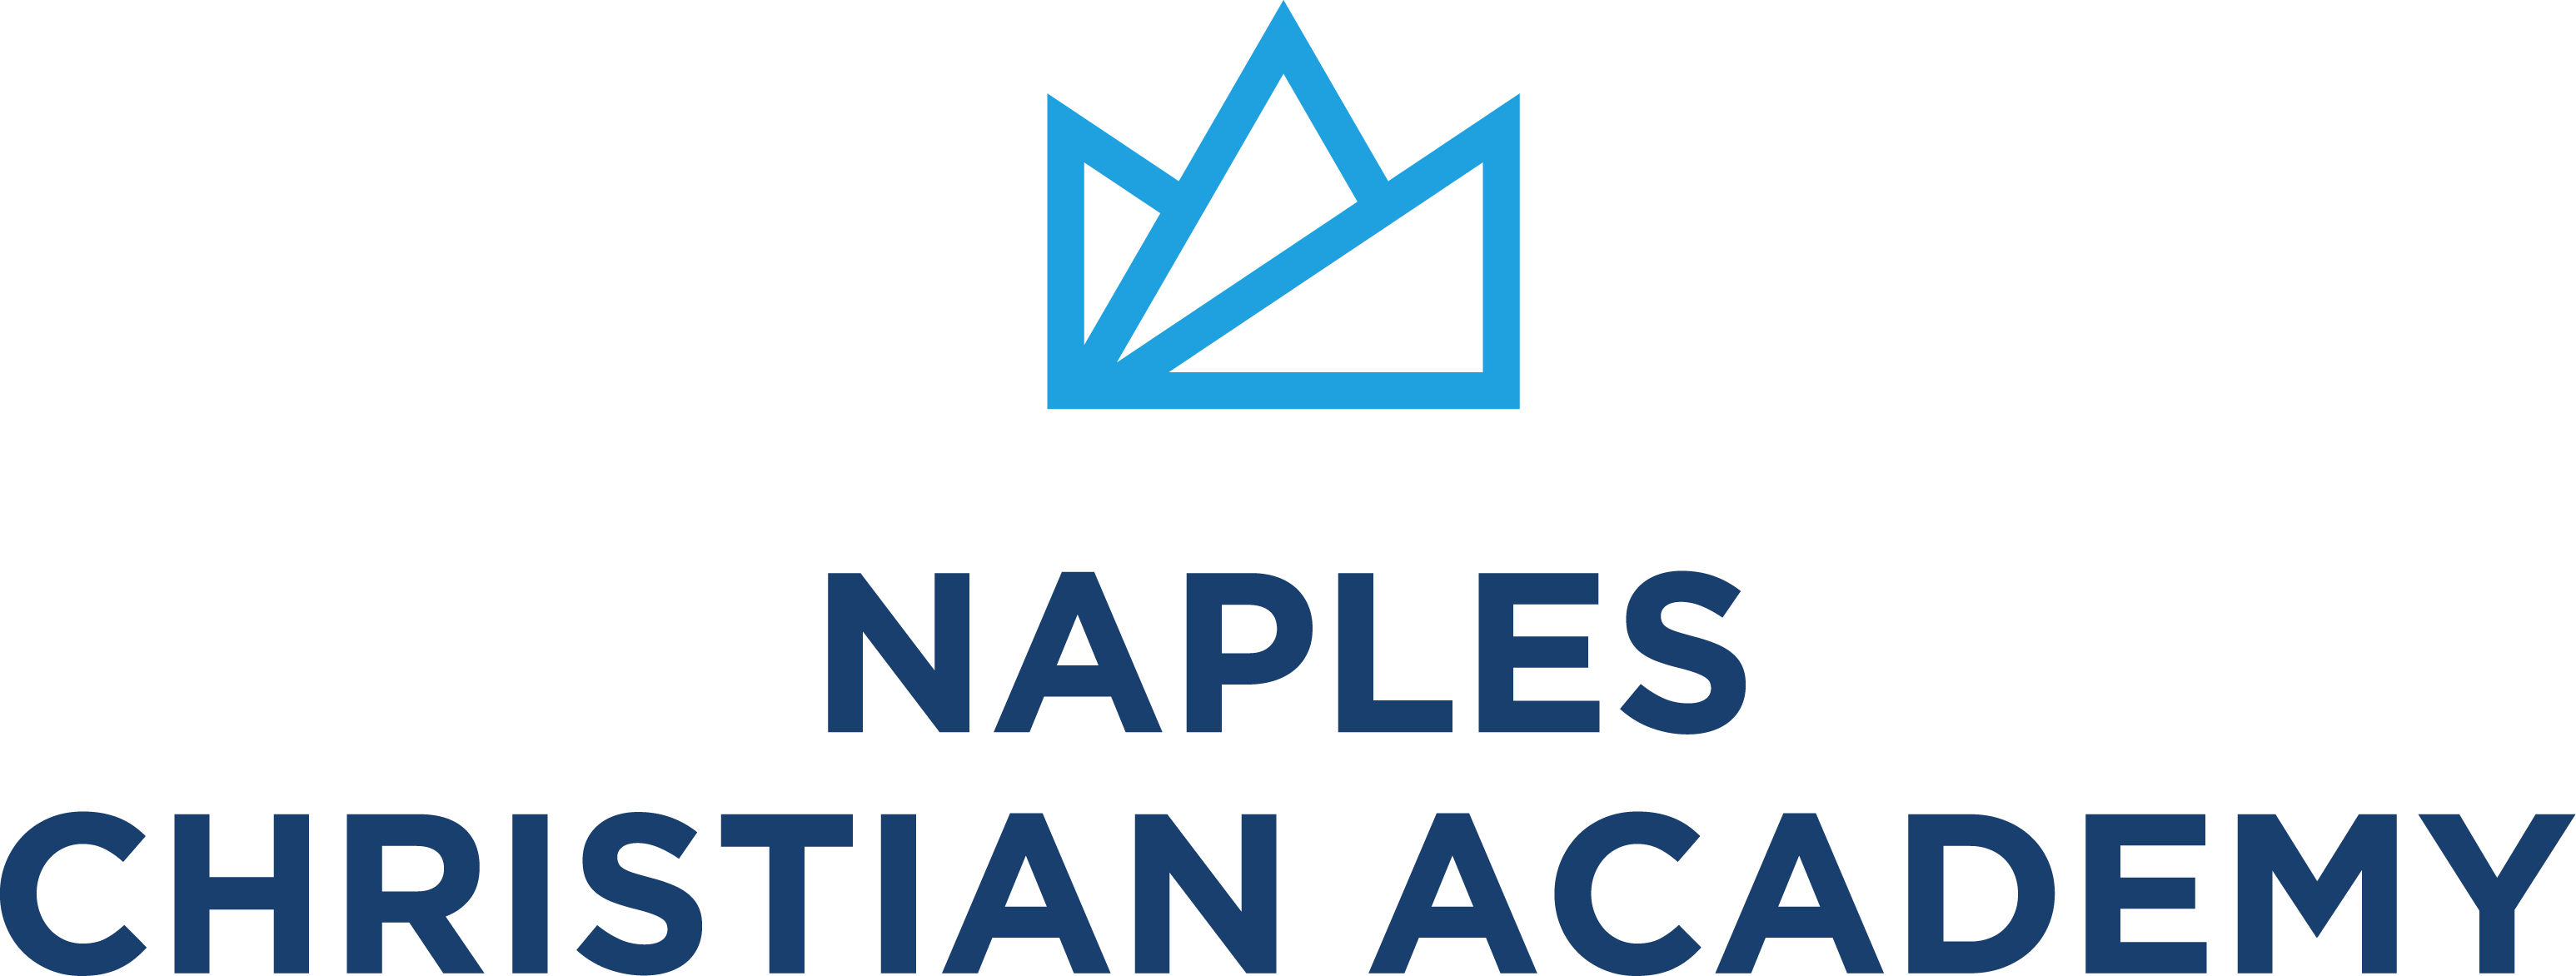 Naples Christian Academy